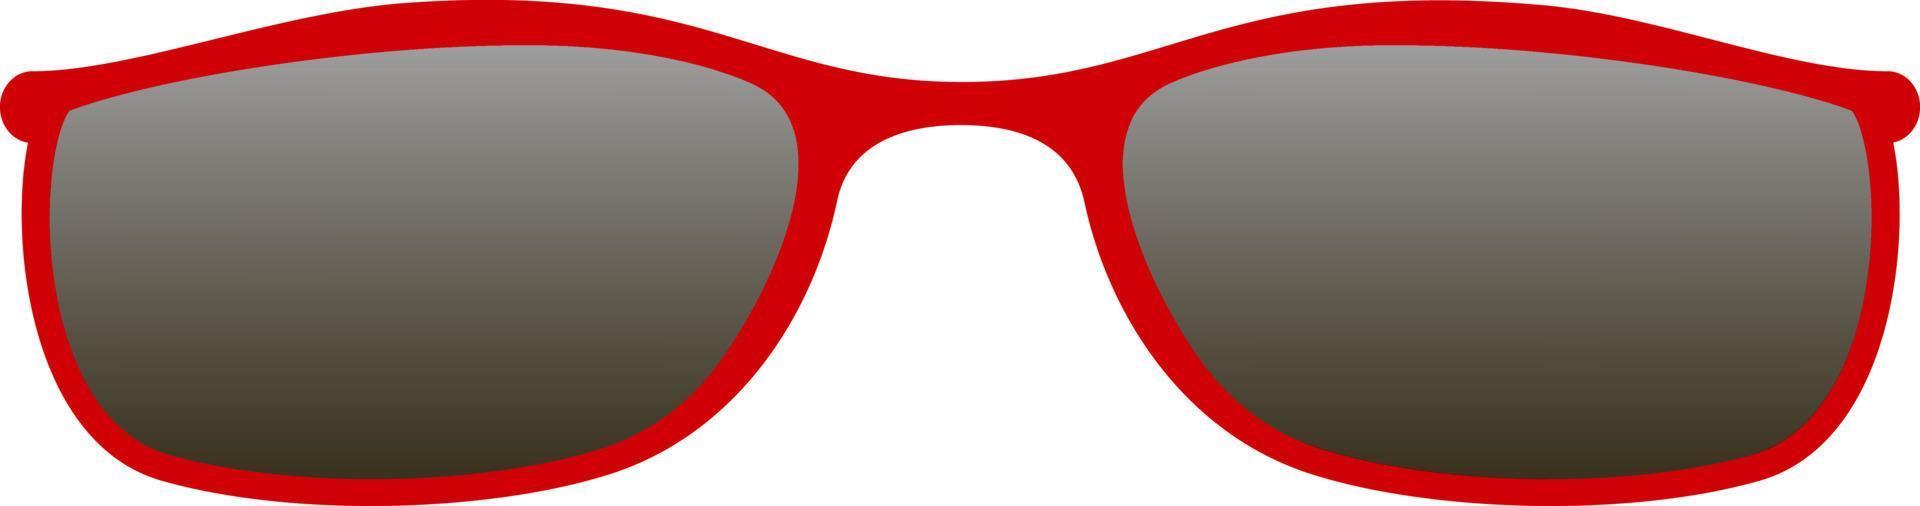 gafas de sol coloridas de diferentes formas y colores. icono de protección solar de verano vector